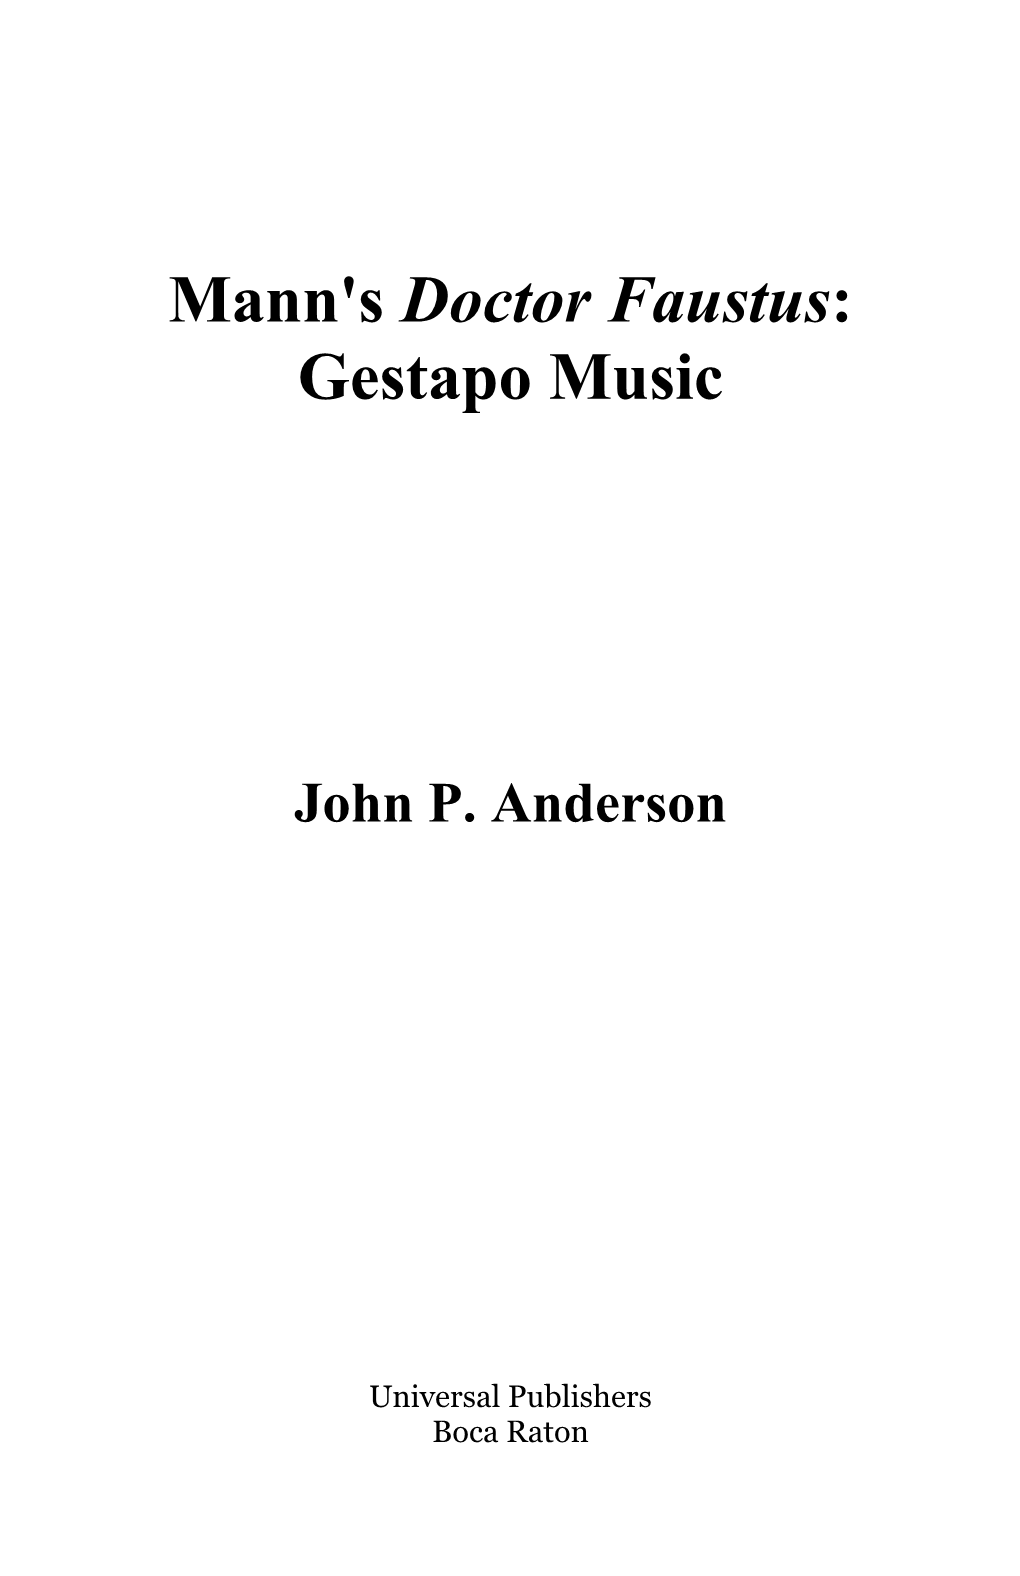 Mann's Doctor Faustus: Gestapo Music